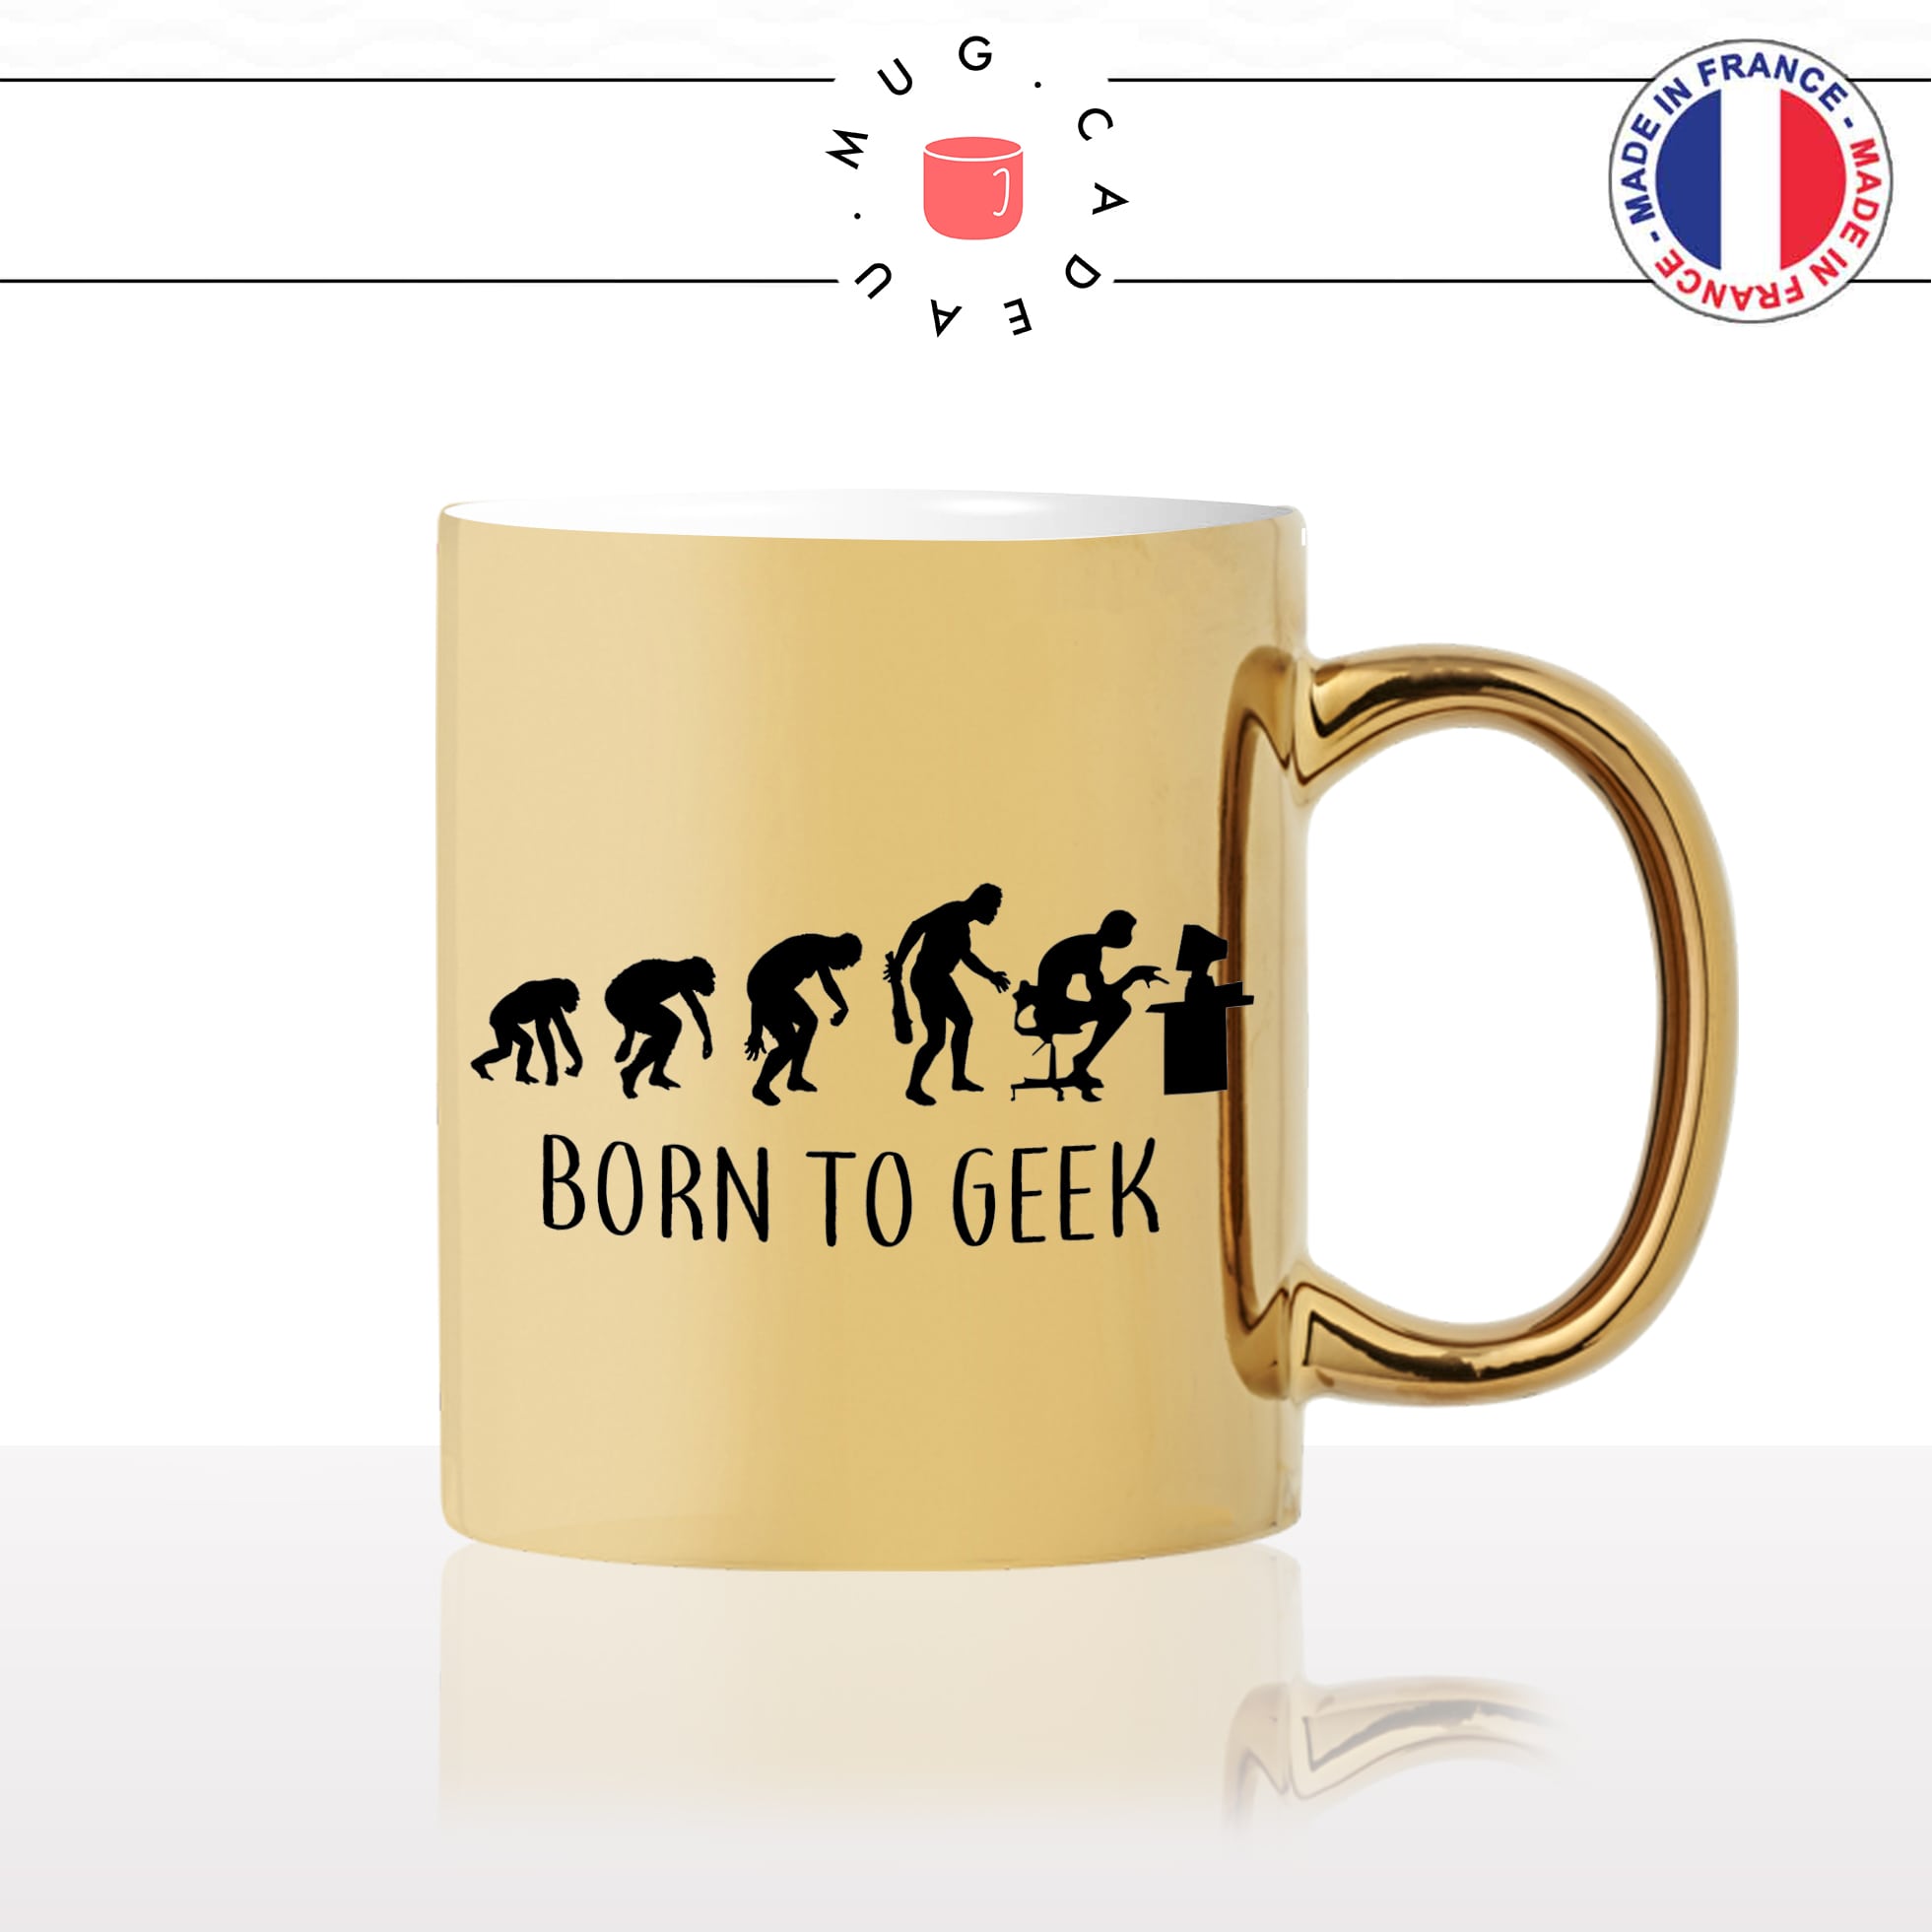 mug-tasse-or-doré-gold-born-to-geek-gamer-jeux-videos-pc-ordinateur-ado-evolution-humaine-homme-cool-idée-cadeau-fun-café-thé-personnalisé2-min